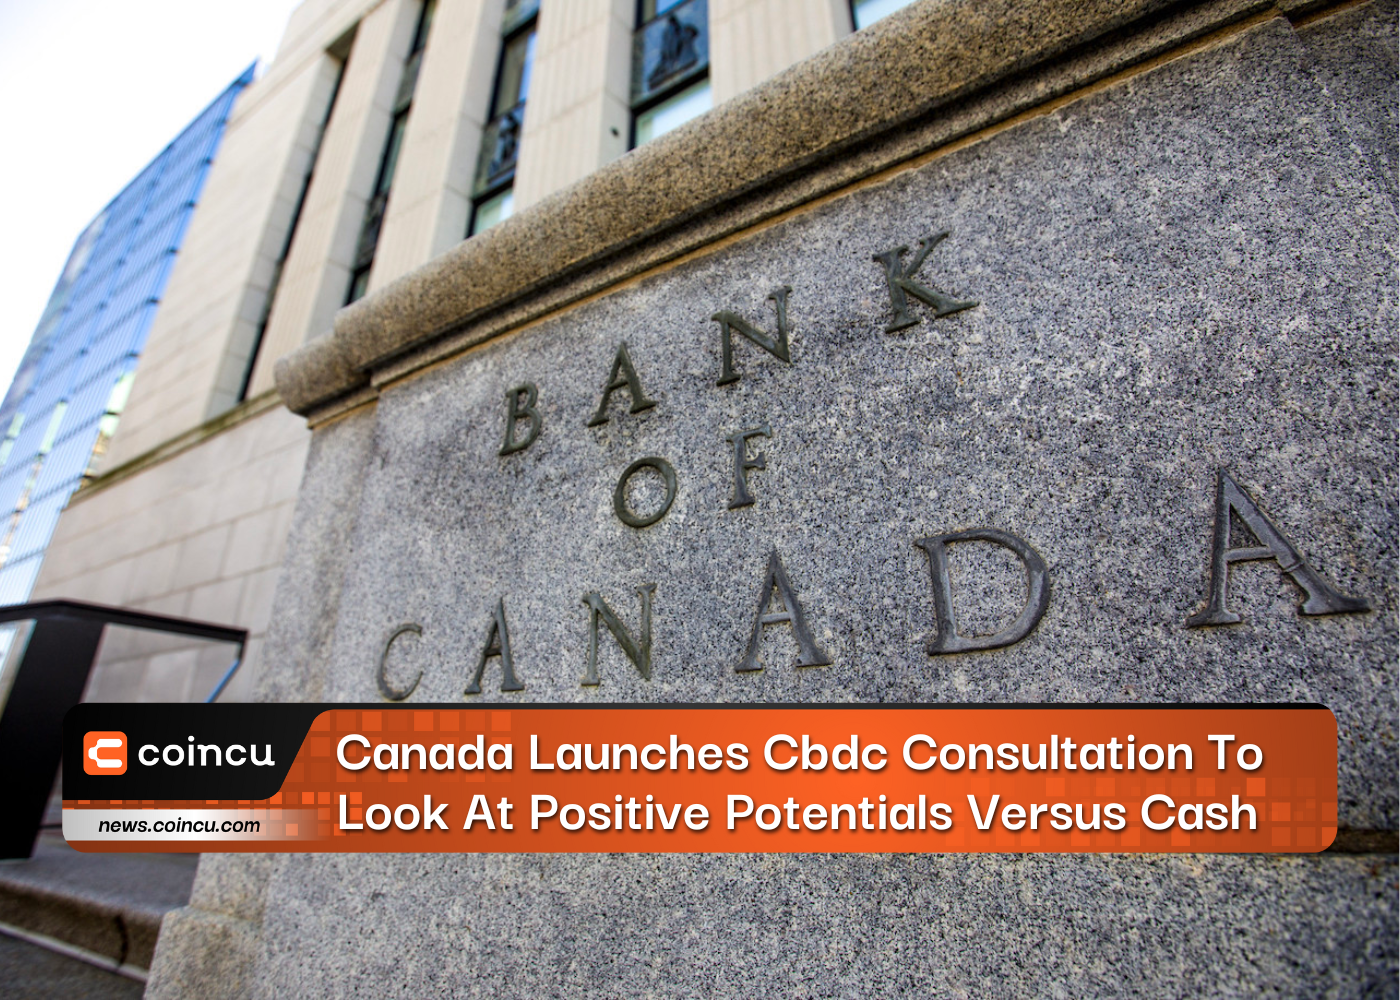 Canada Launches Cbdc Consultation To Look At Positive Potentials Versus Cash